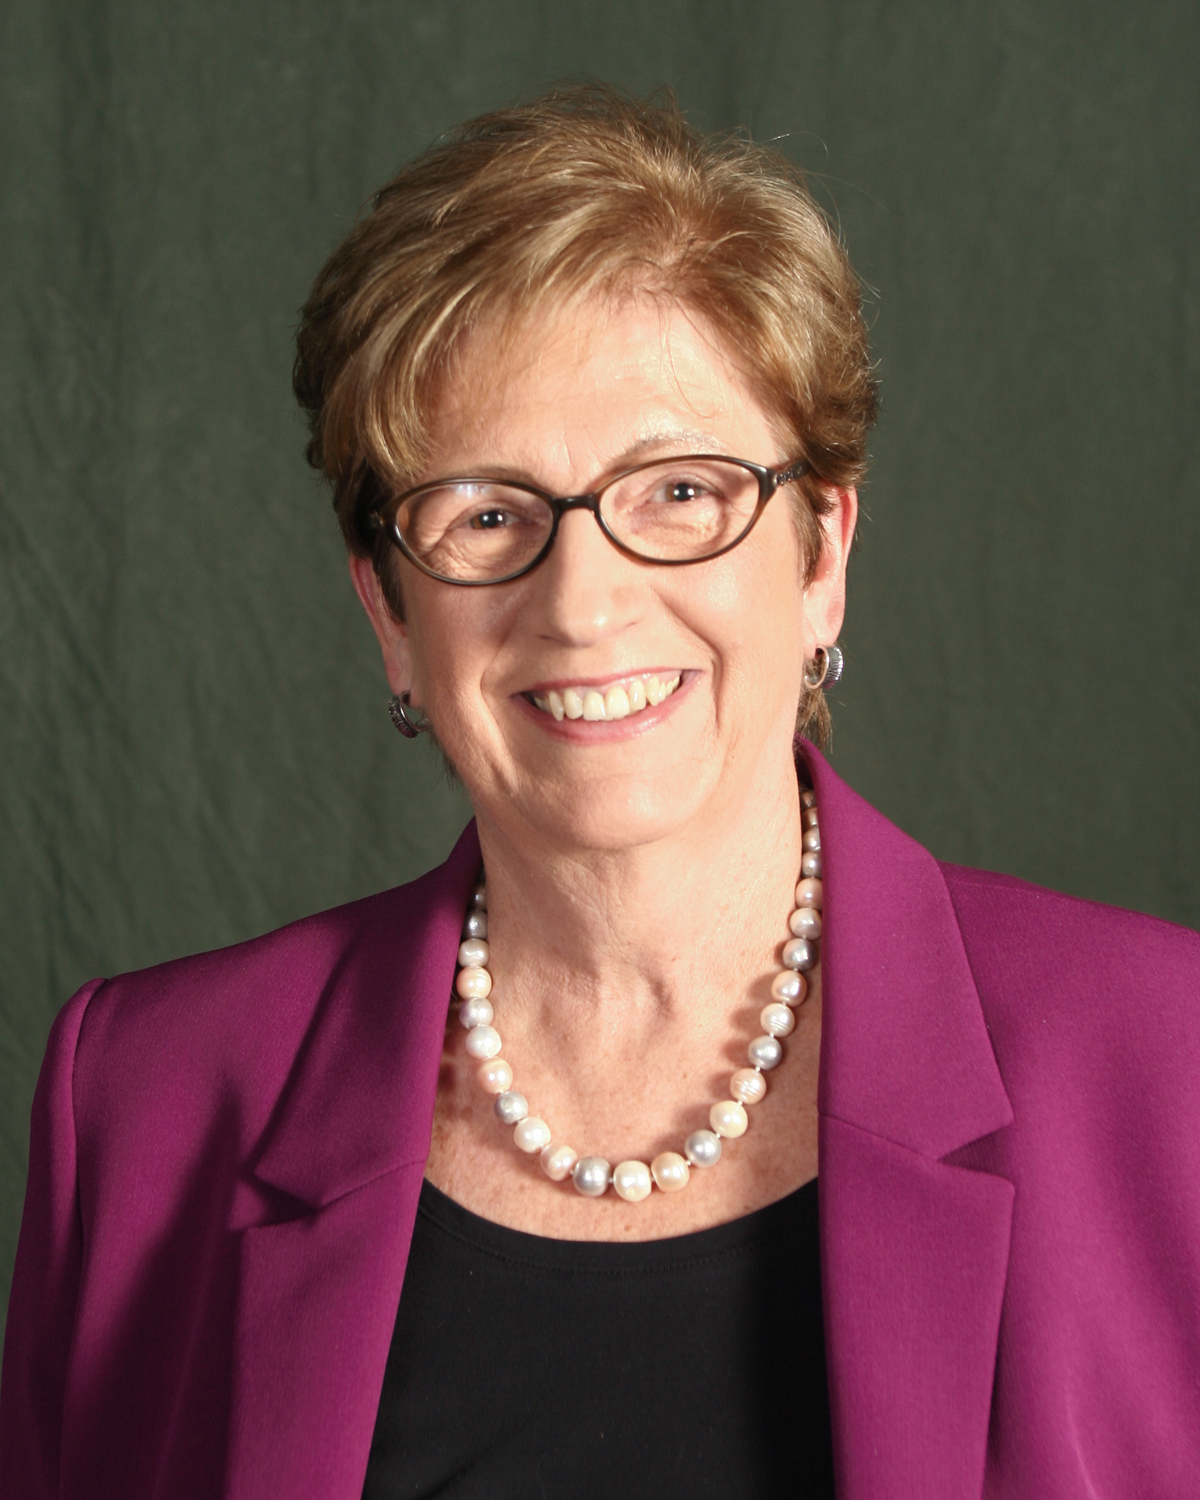 Nancy Urell, President, Career Corner Associates